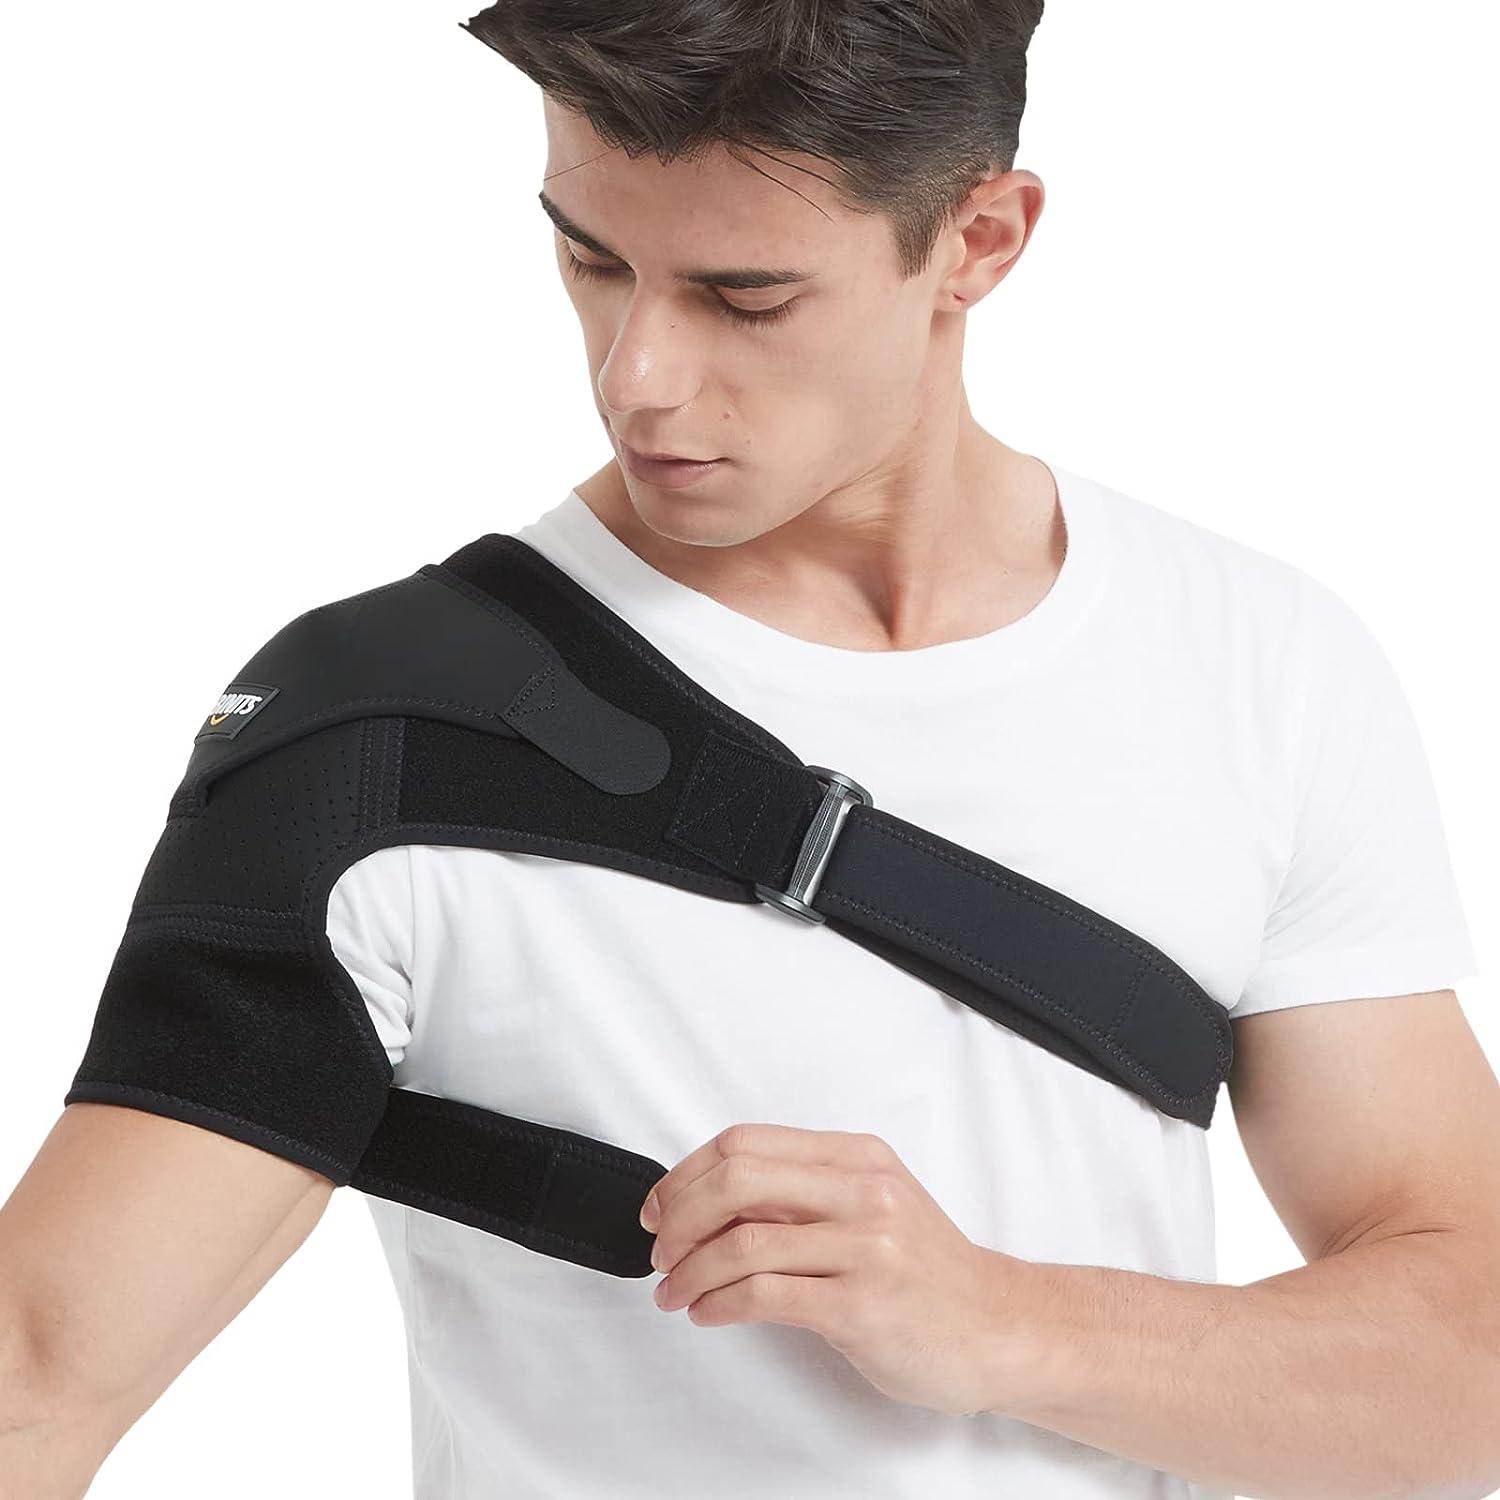 Shoulder Brace for Torn Rotator Cuff